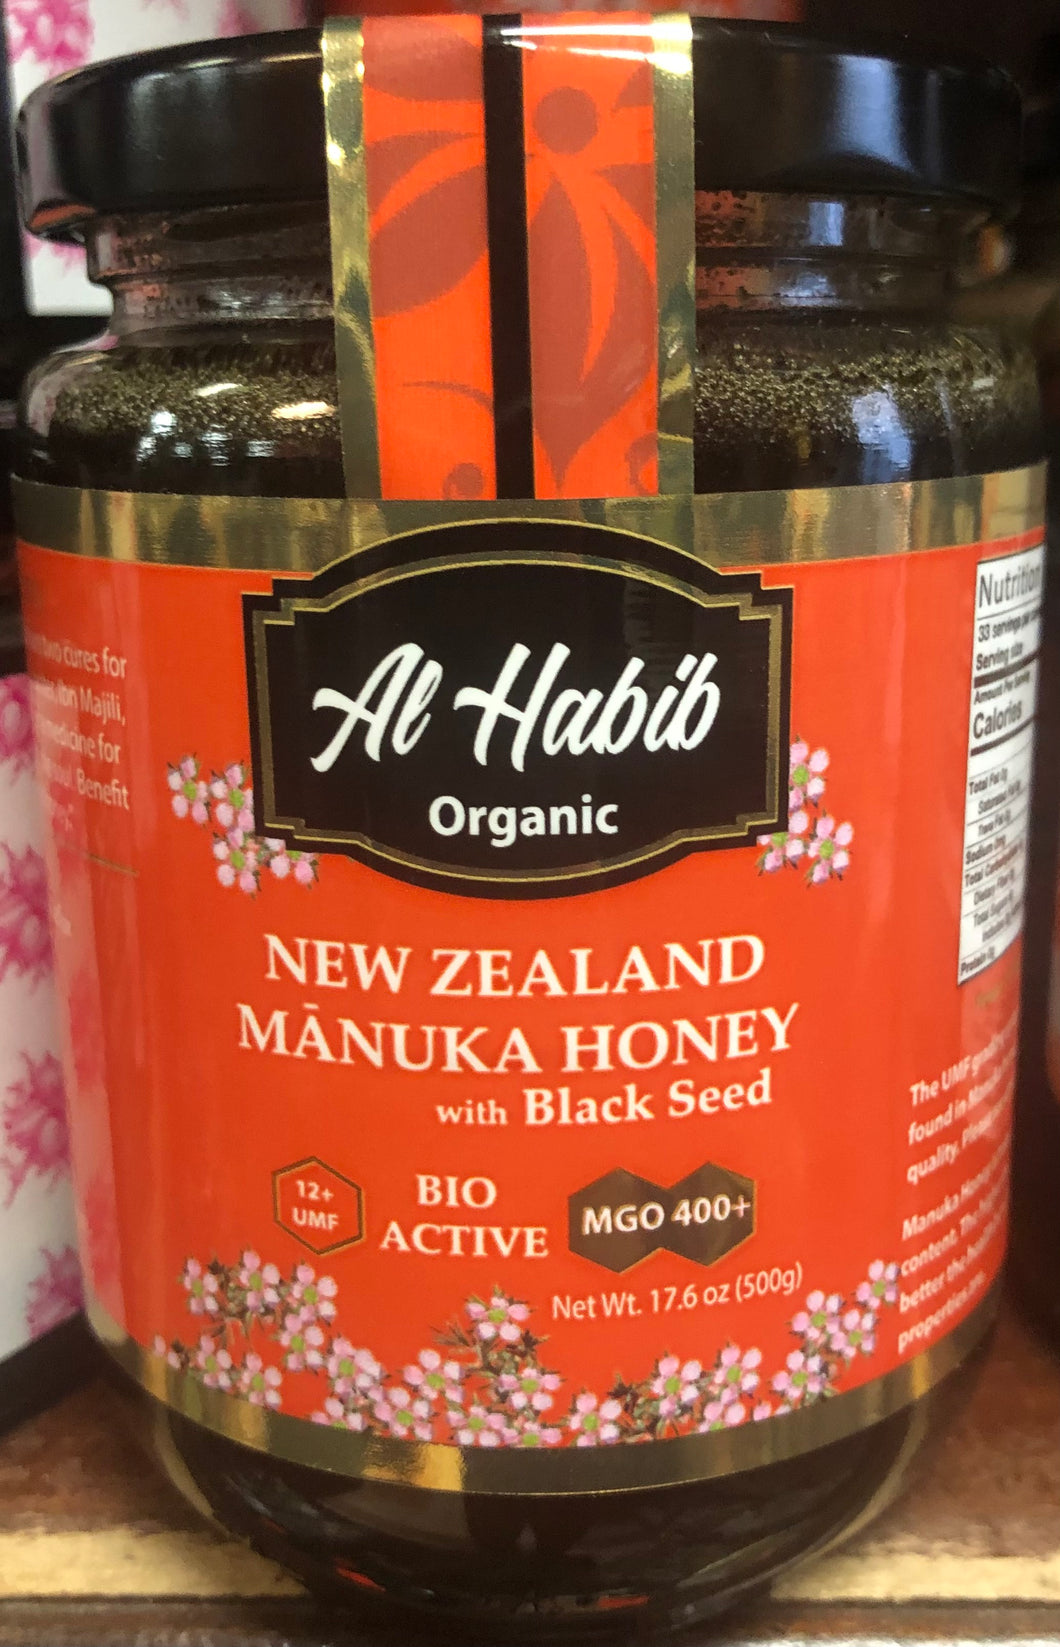 New Zealand Organic Manuka Honey with Black Seed